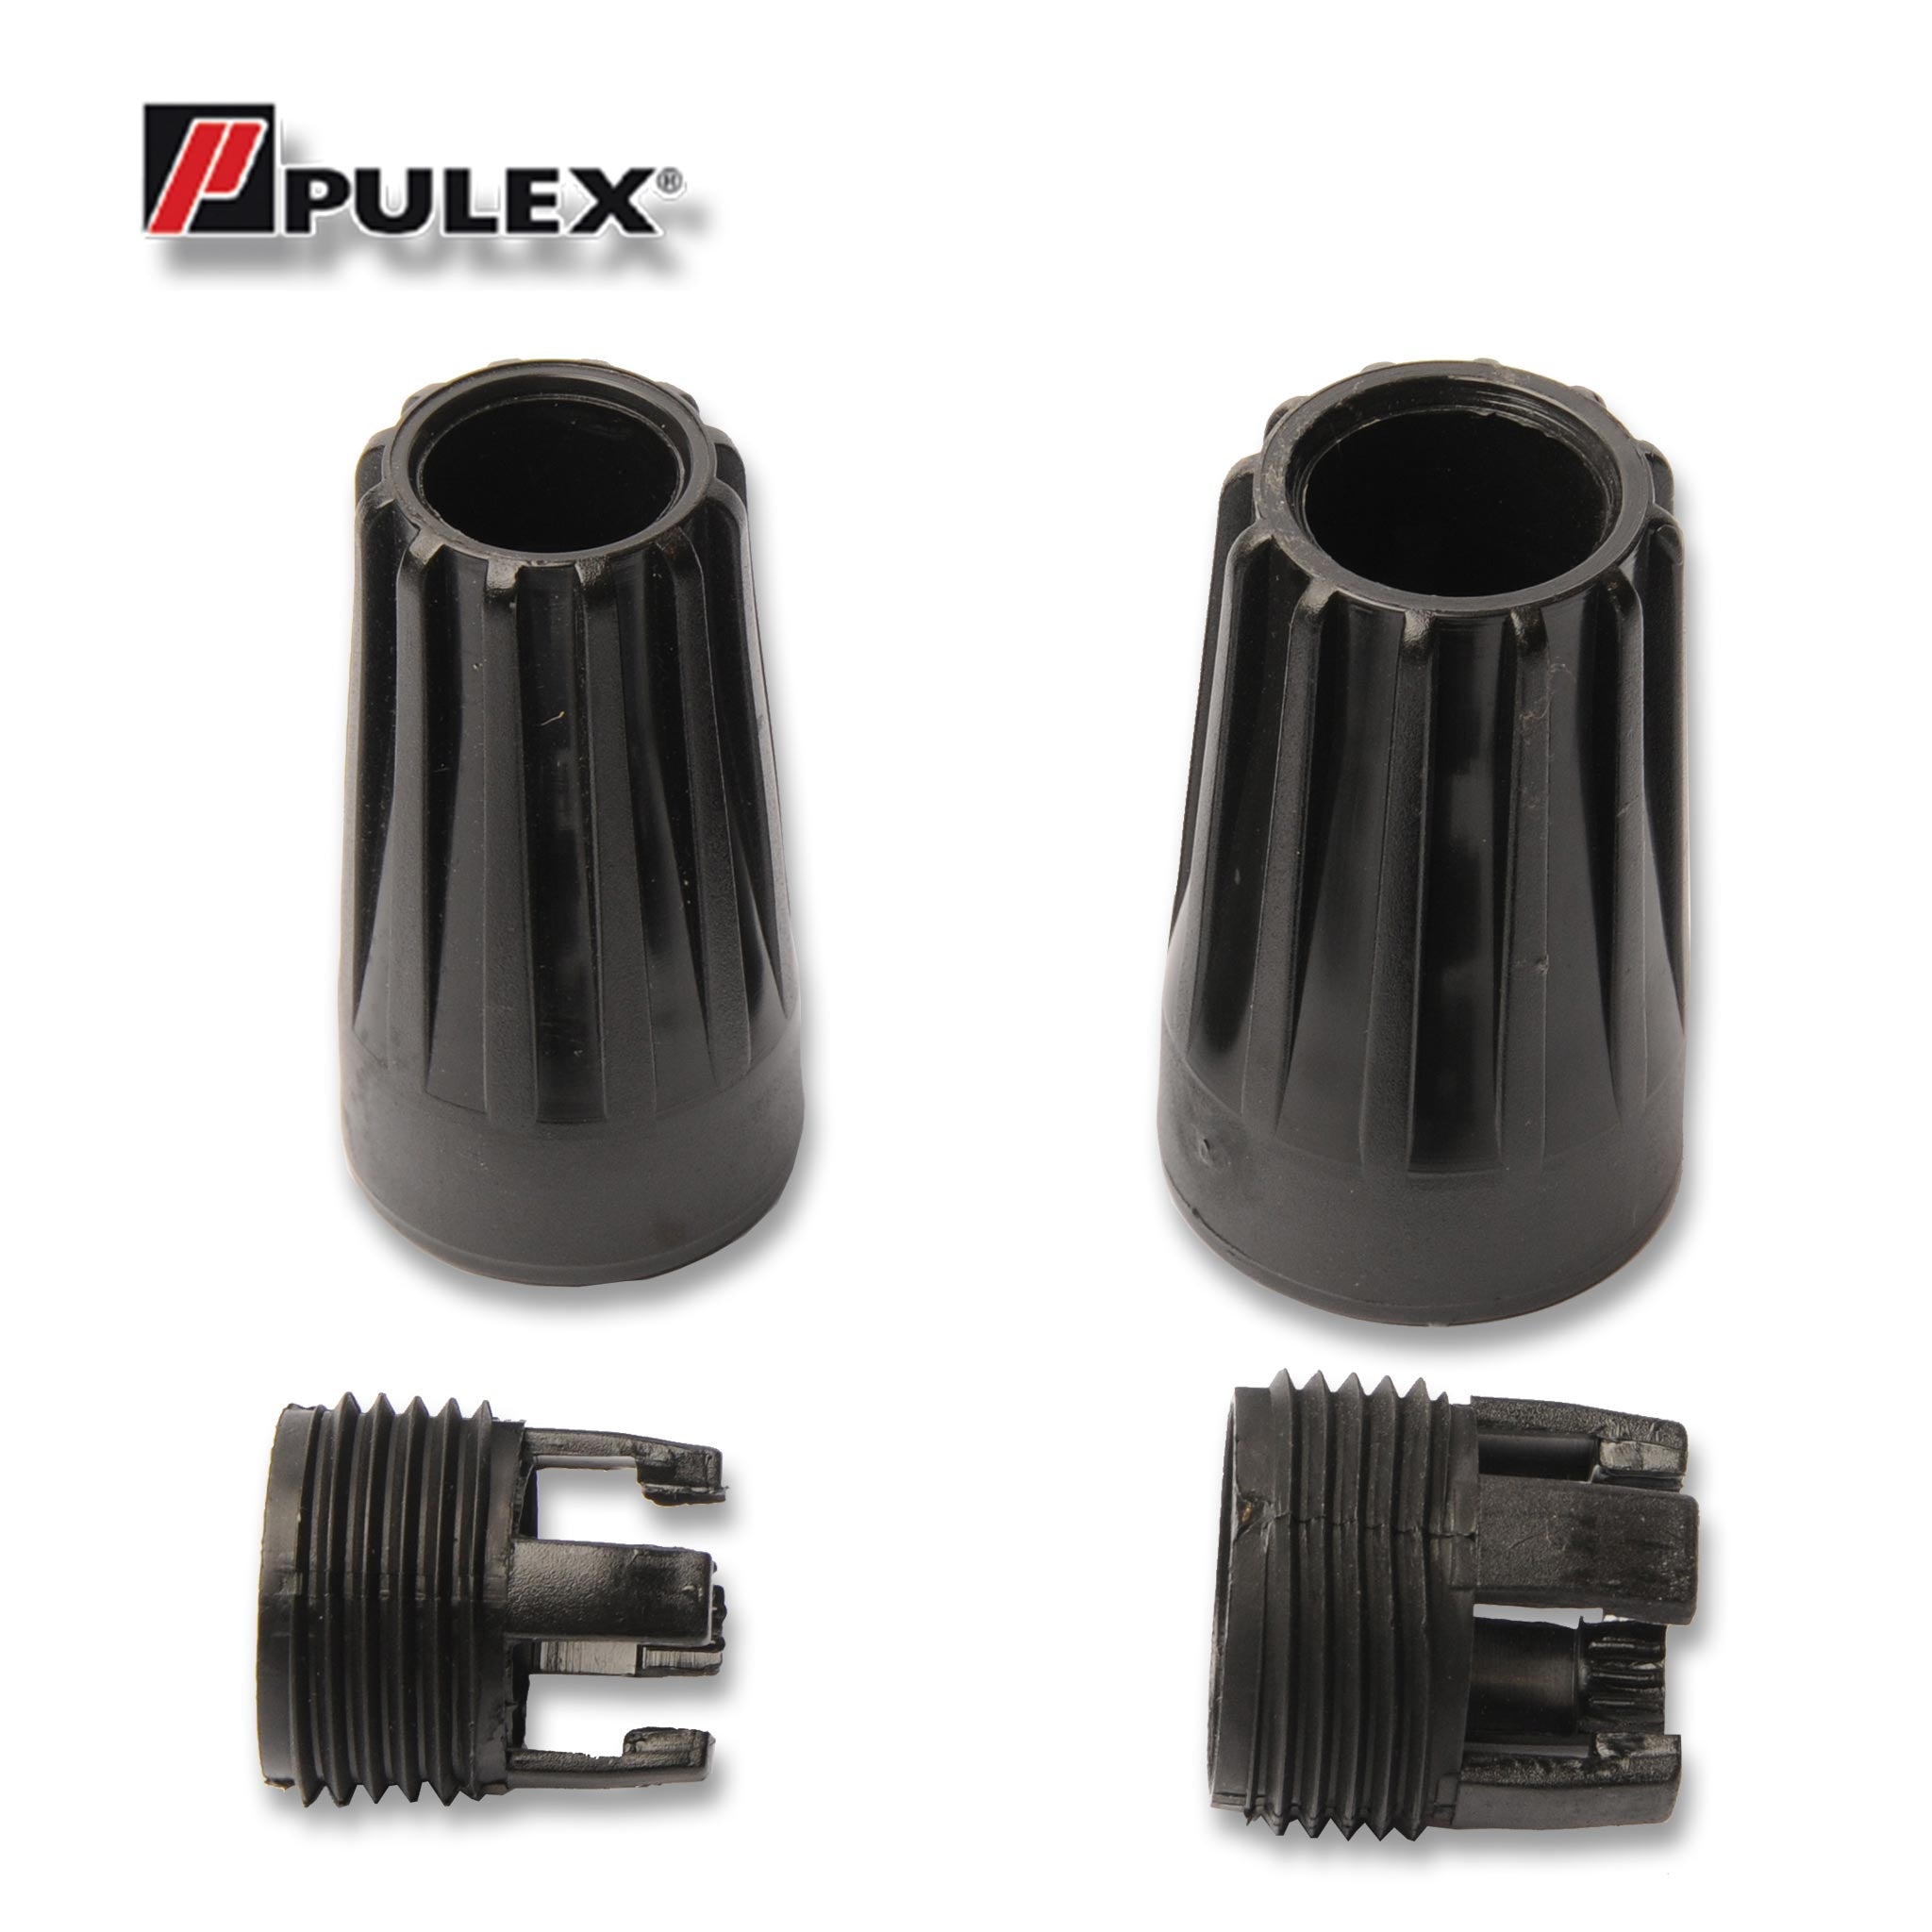 Pulex Locking Collars